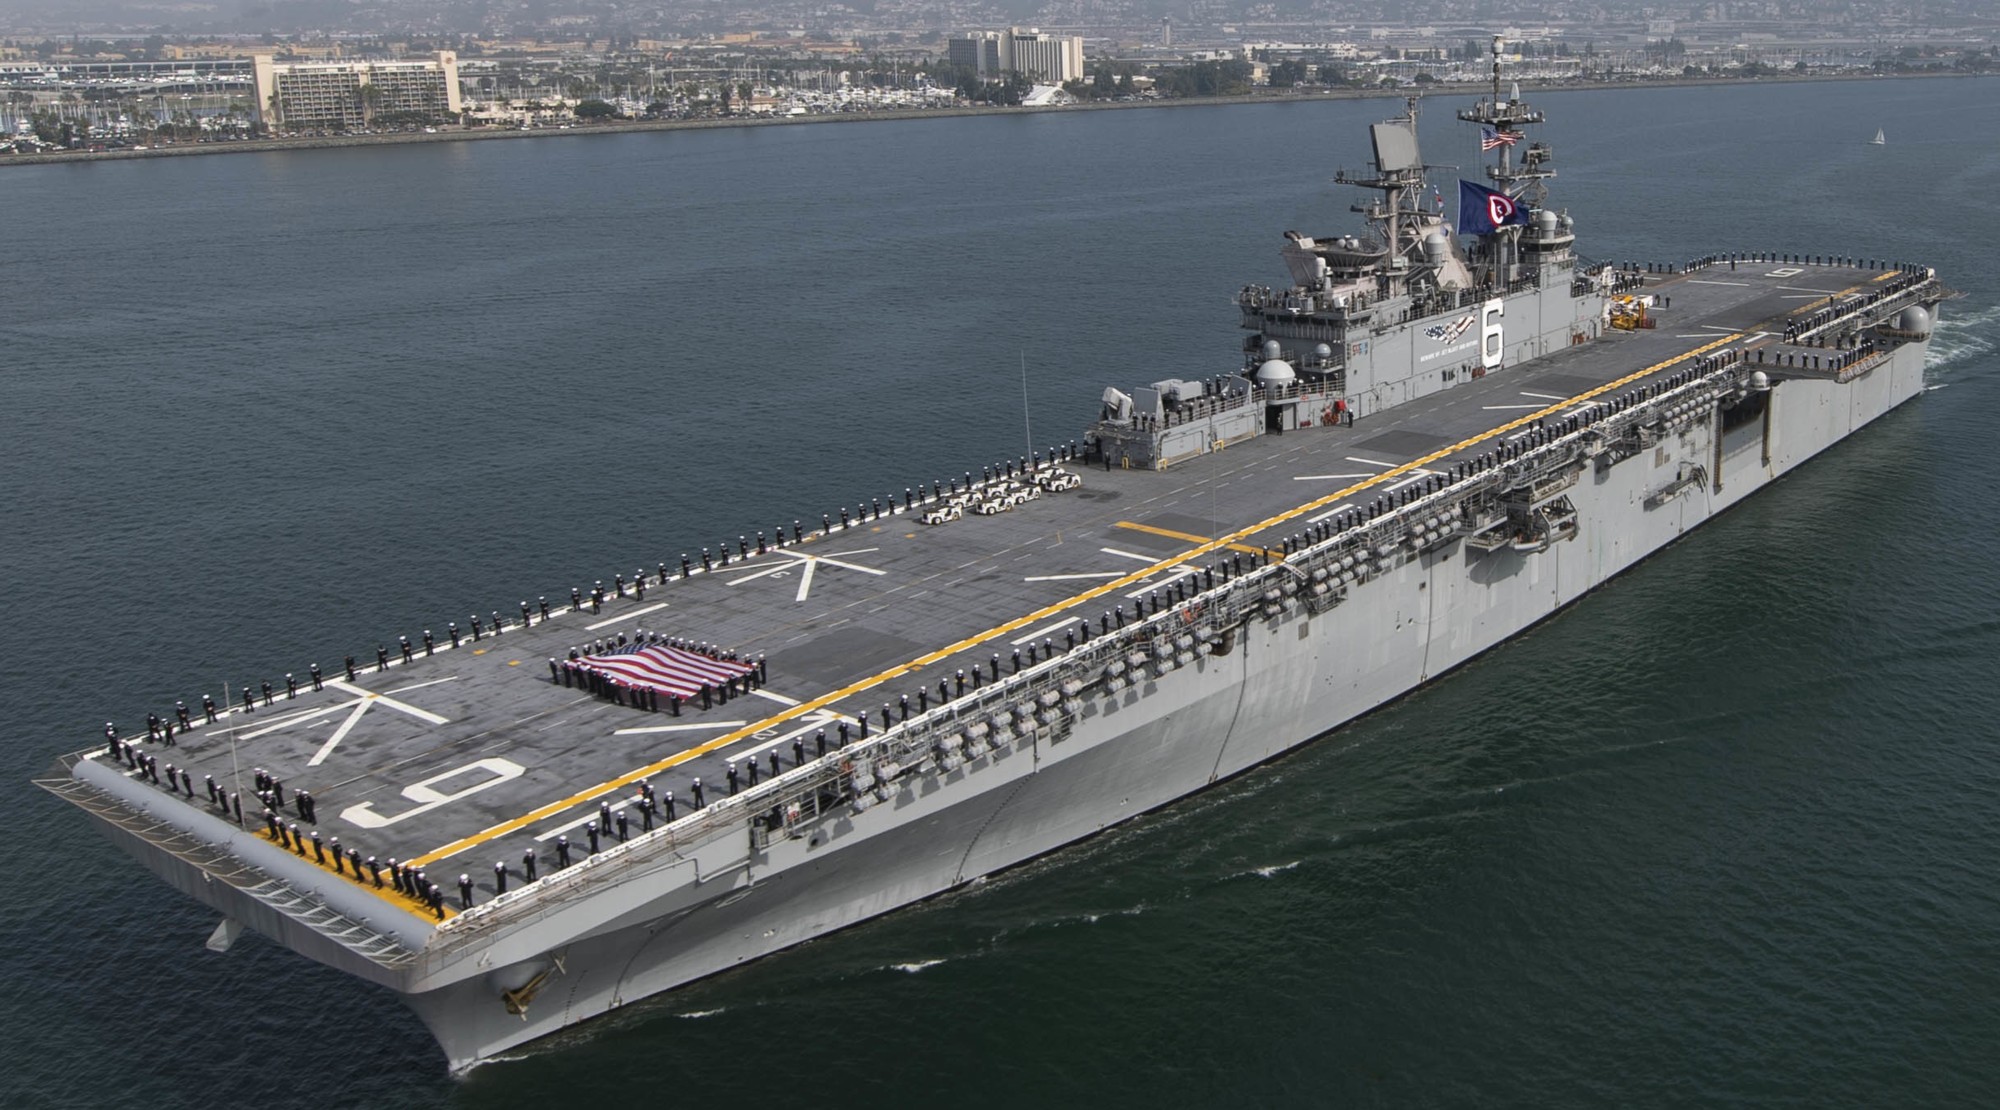 lha-6 uss america amphibious assault ship landing us navy departing san diego for sasebo 148